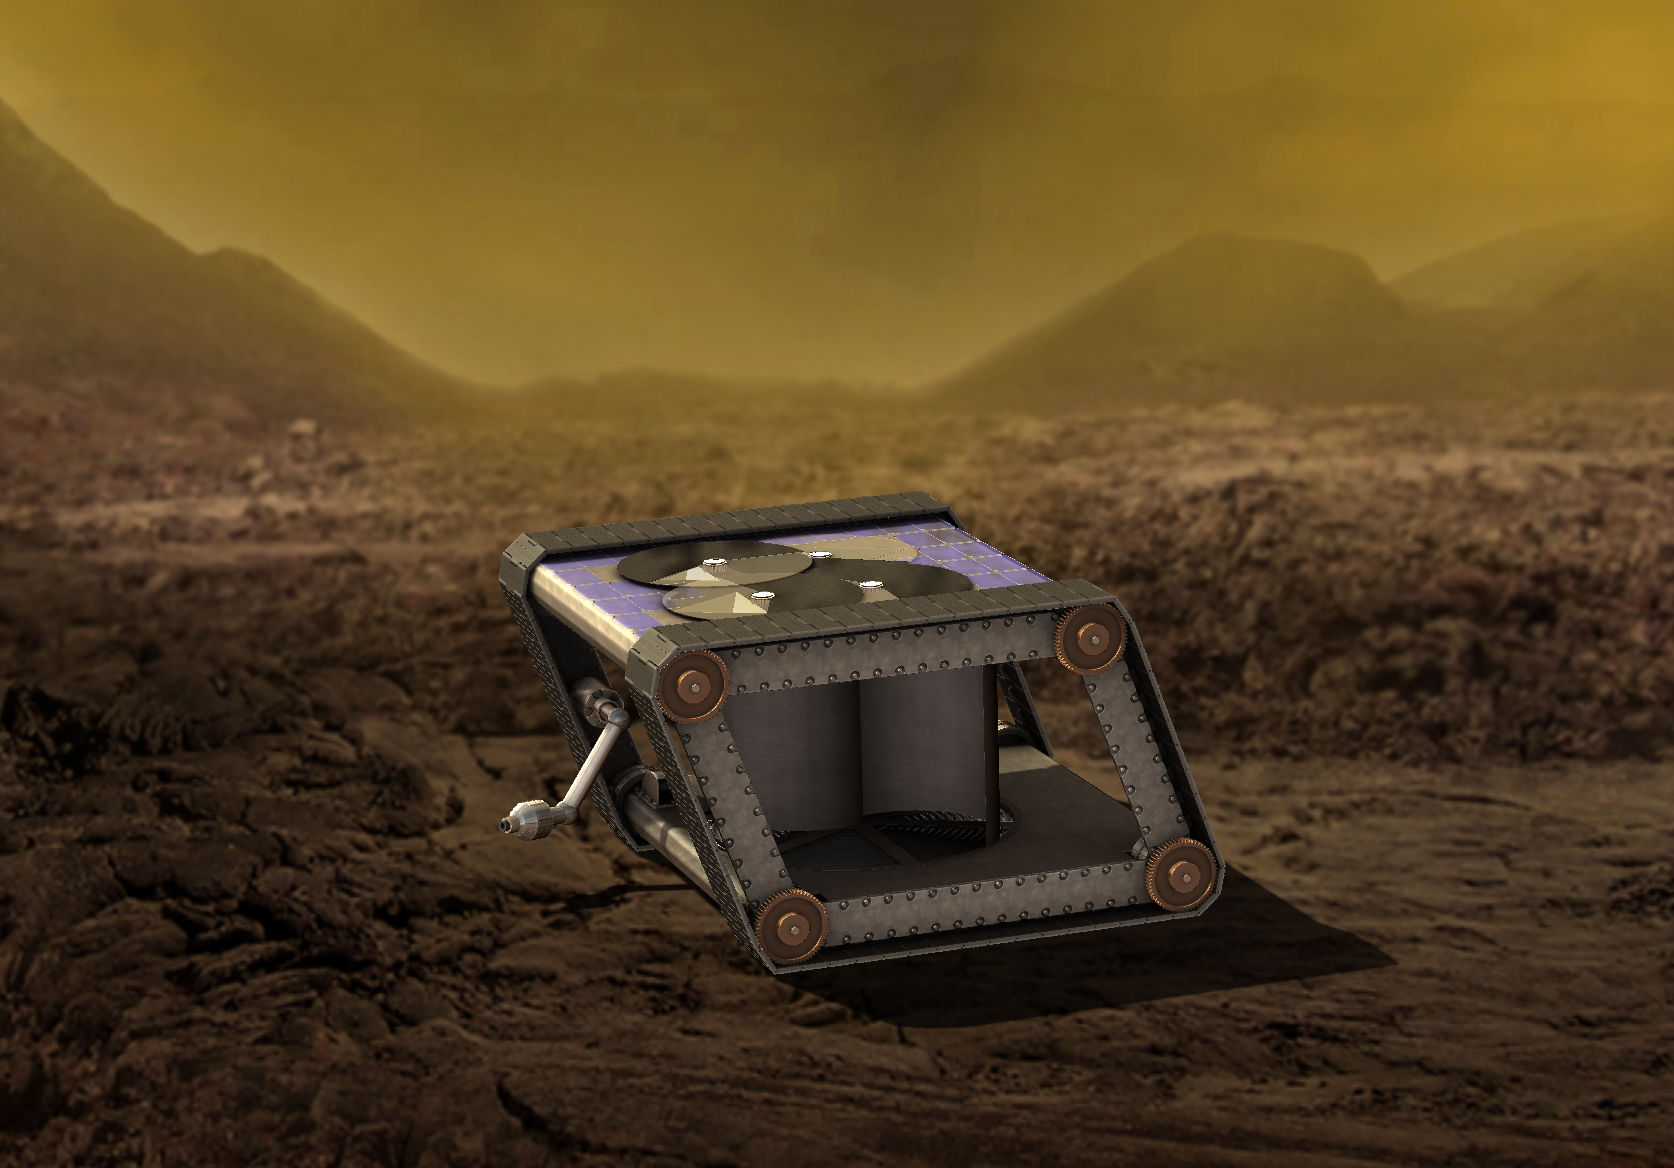 Venus mechanical rover